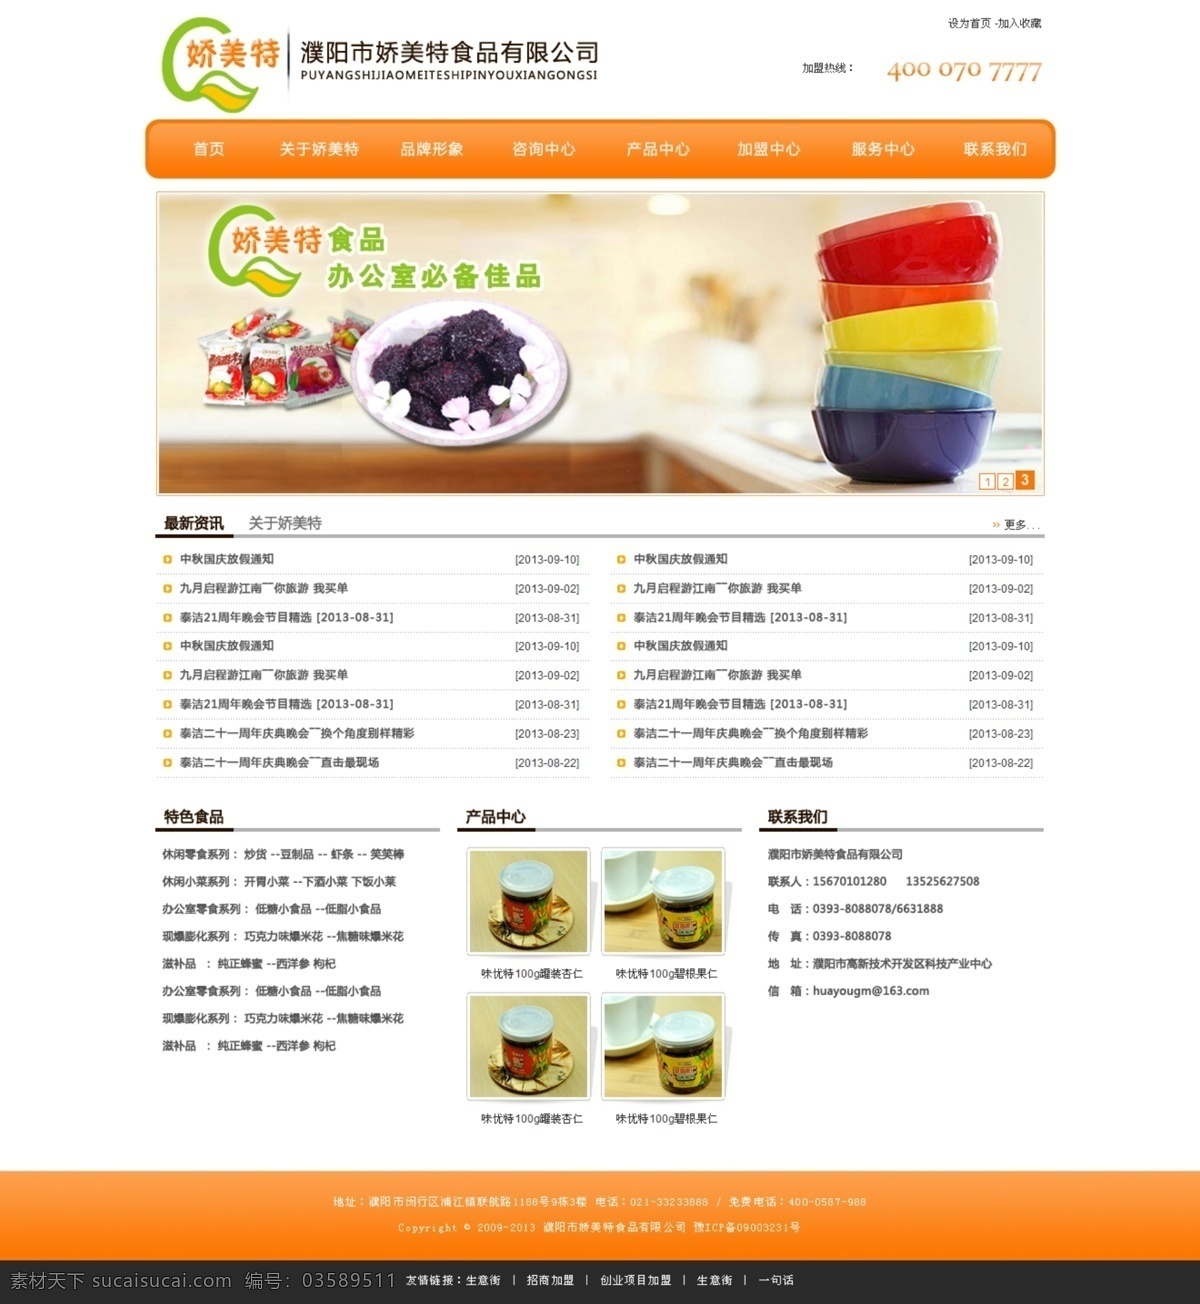 吃货 美食 零食 企业网站 分层 中文网站 网站模板 美味汇聚 零食小吃 橙色 白色